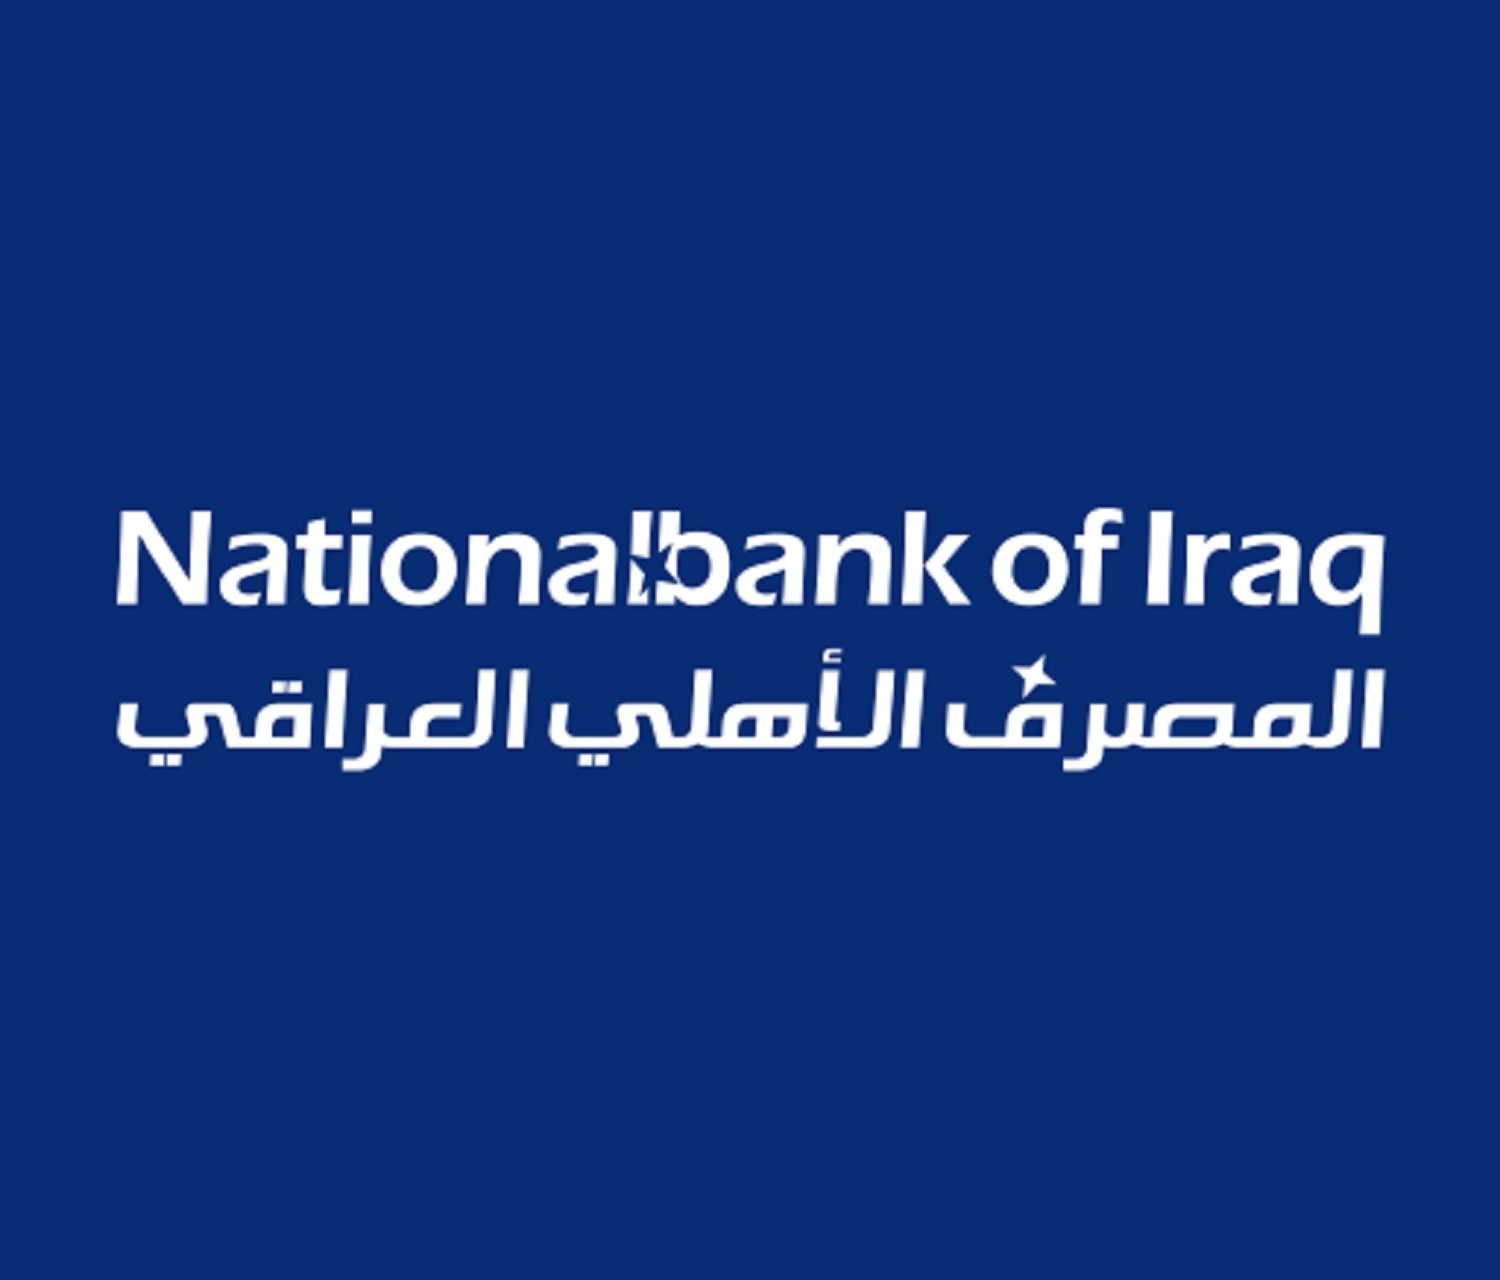 المصرف الأهلي العراقي يعيّن وكالة الاتصالات الرائدة بشير مريش للاستشارات – BMC لإدارة علاقاته العامة في العراق